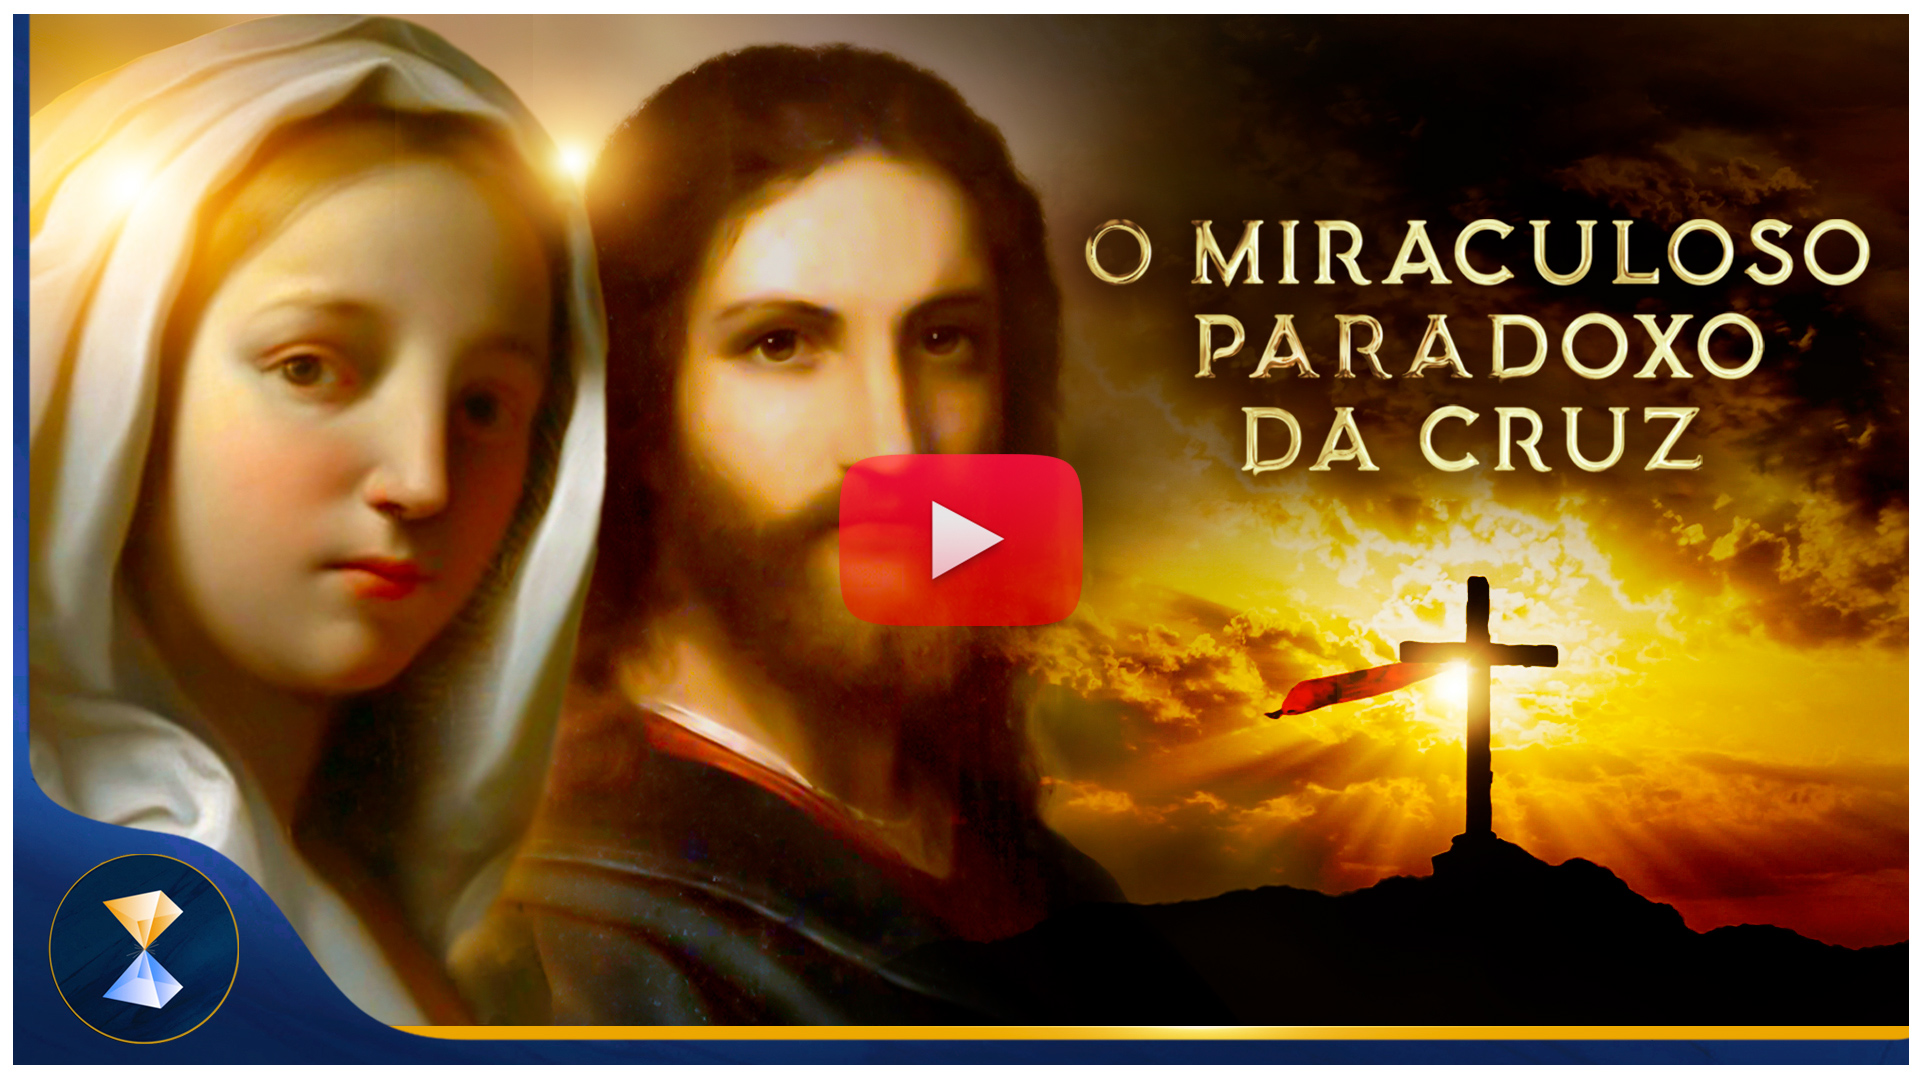 O miraculoso paradoxo da cruz